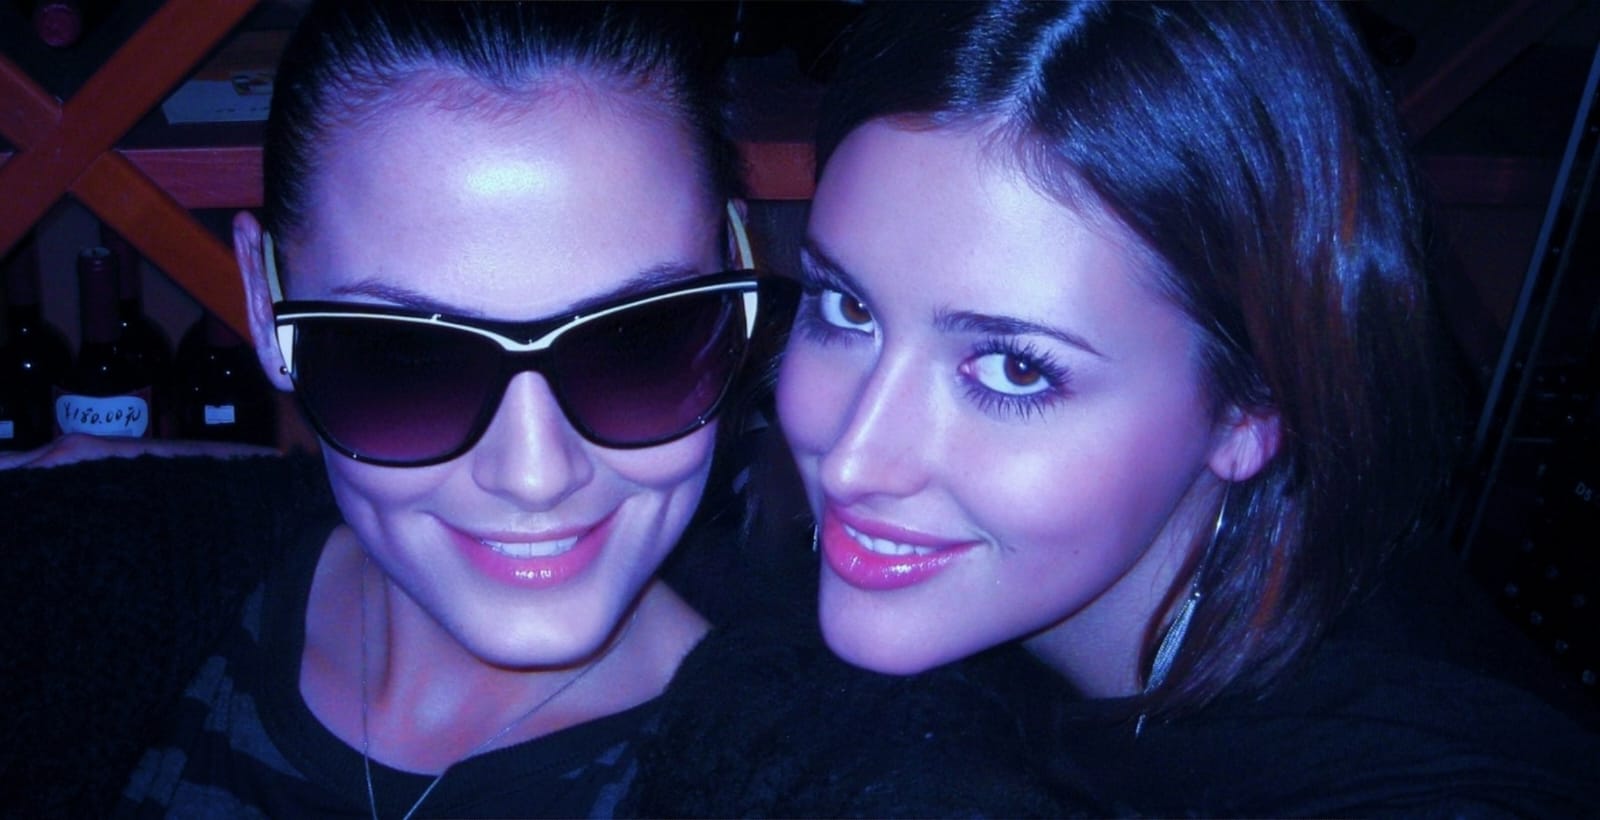 Katya and April sunglasses in a bar